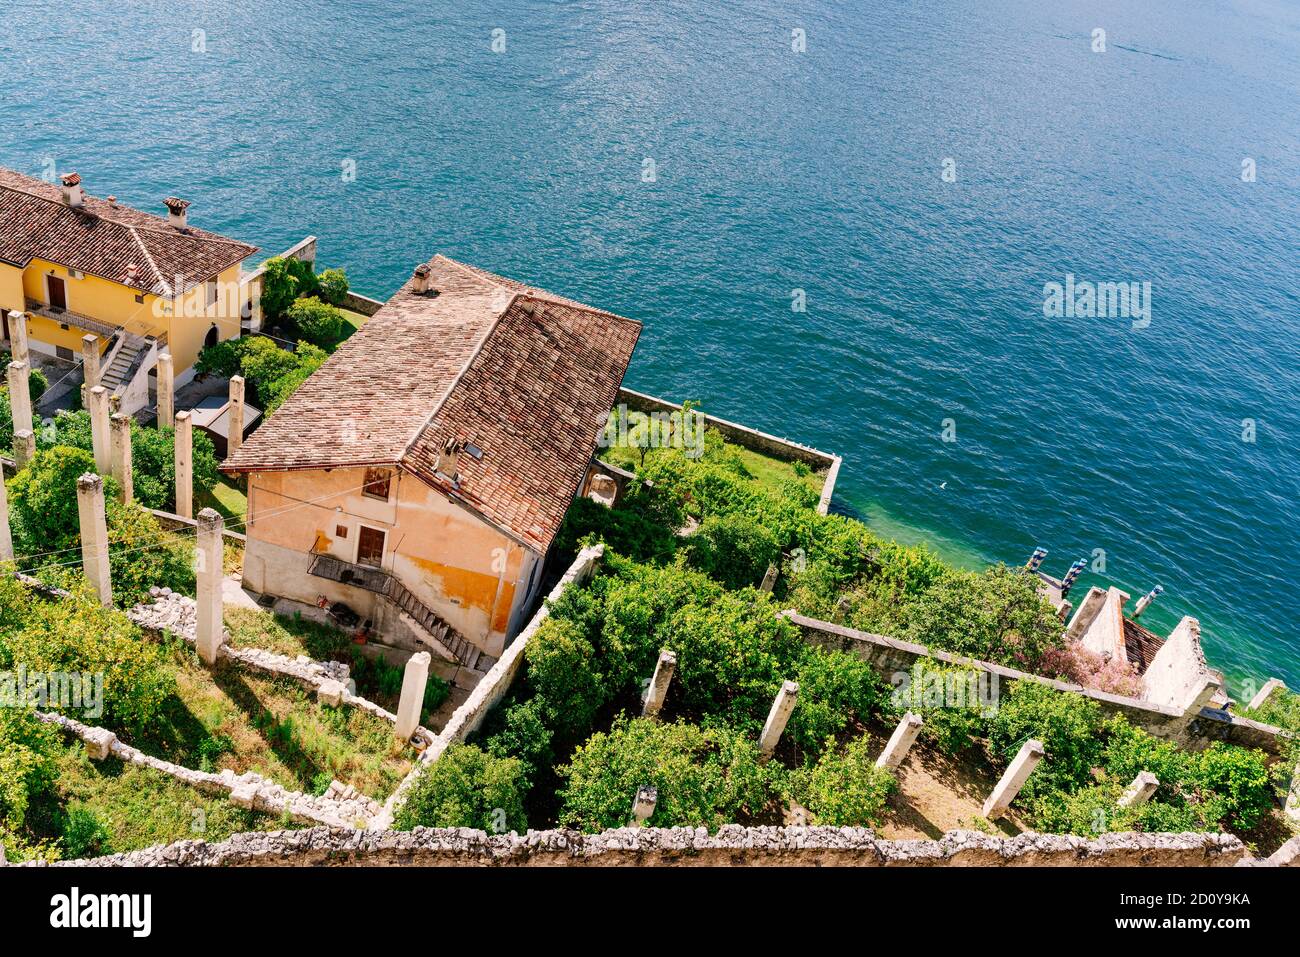 Limoni in riva al mare, Limone, città sul Lago di Garda, Lombardia, Italia Foto Stock